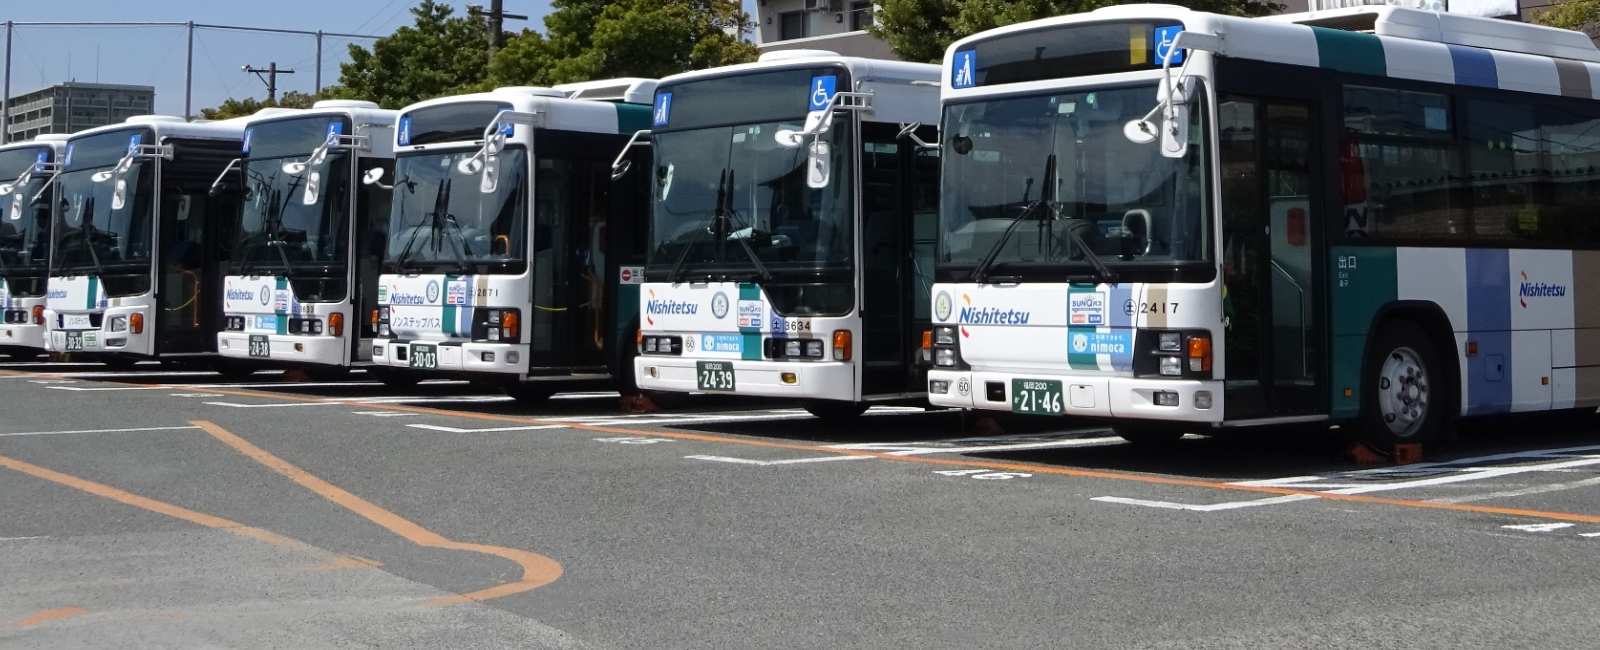 バス 状況 中央 運行 日本中央バス 公式ホームページ